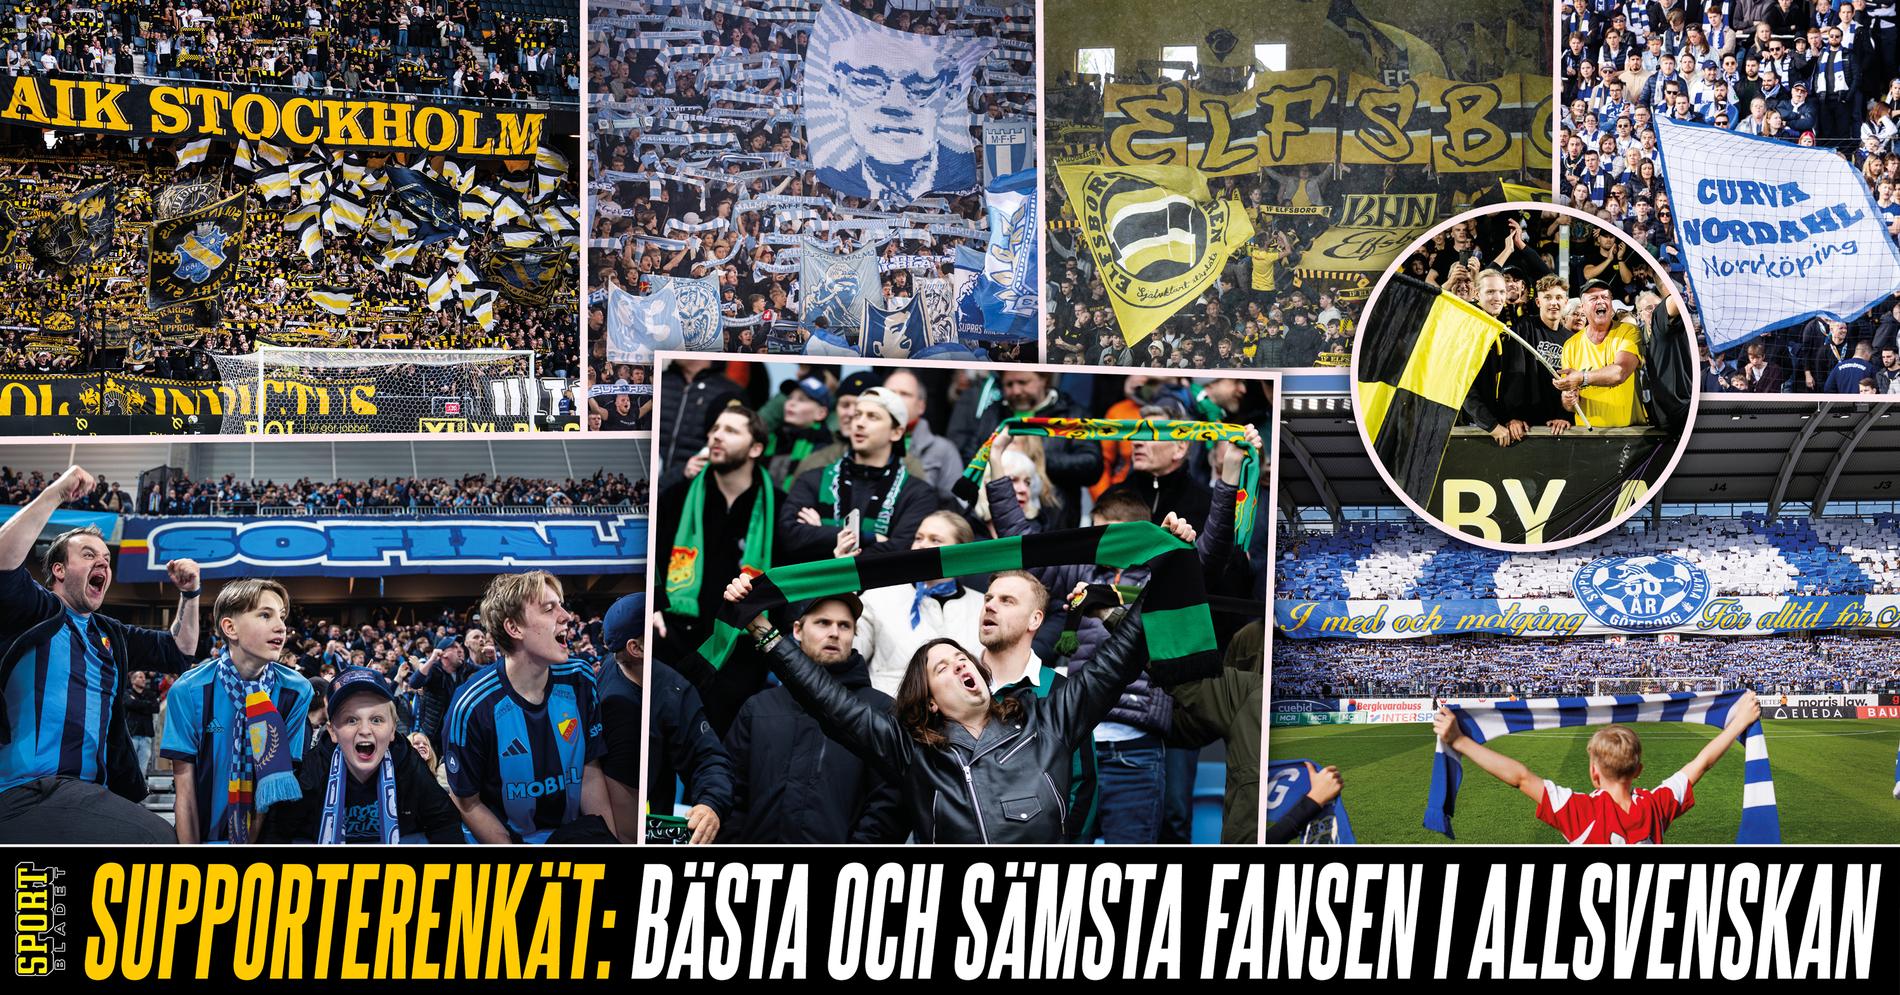 Halmstad BK: Stor supporterenkät: Bästa och sämsta fansen i allsvenskan